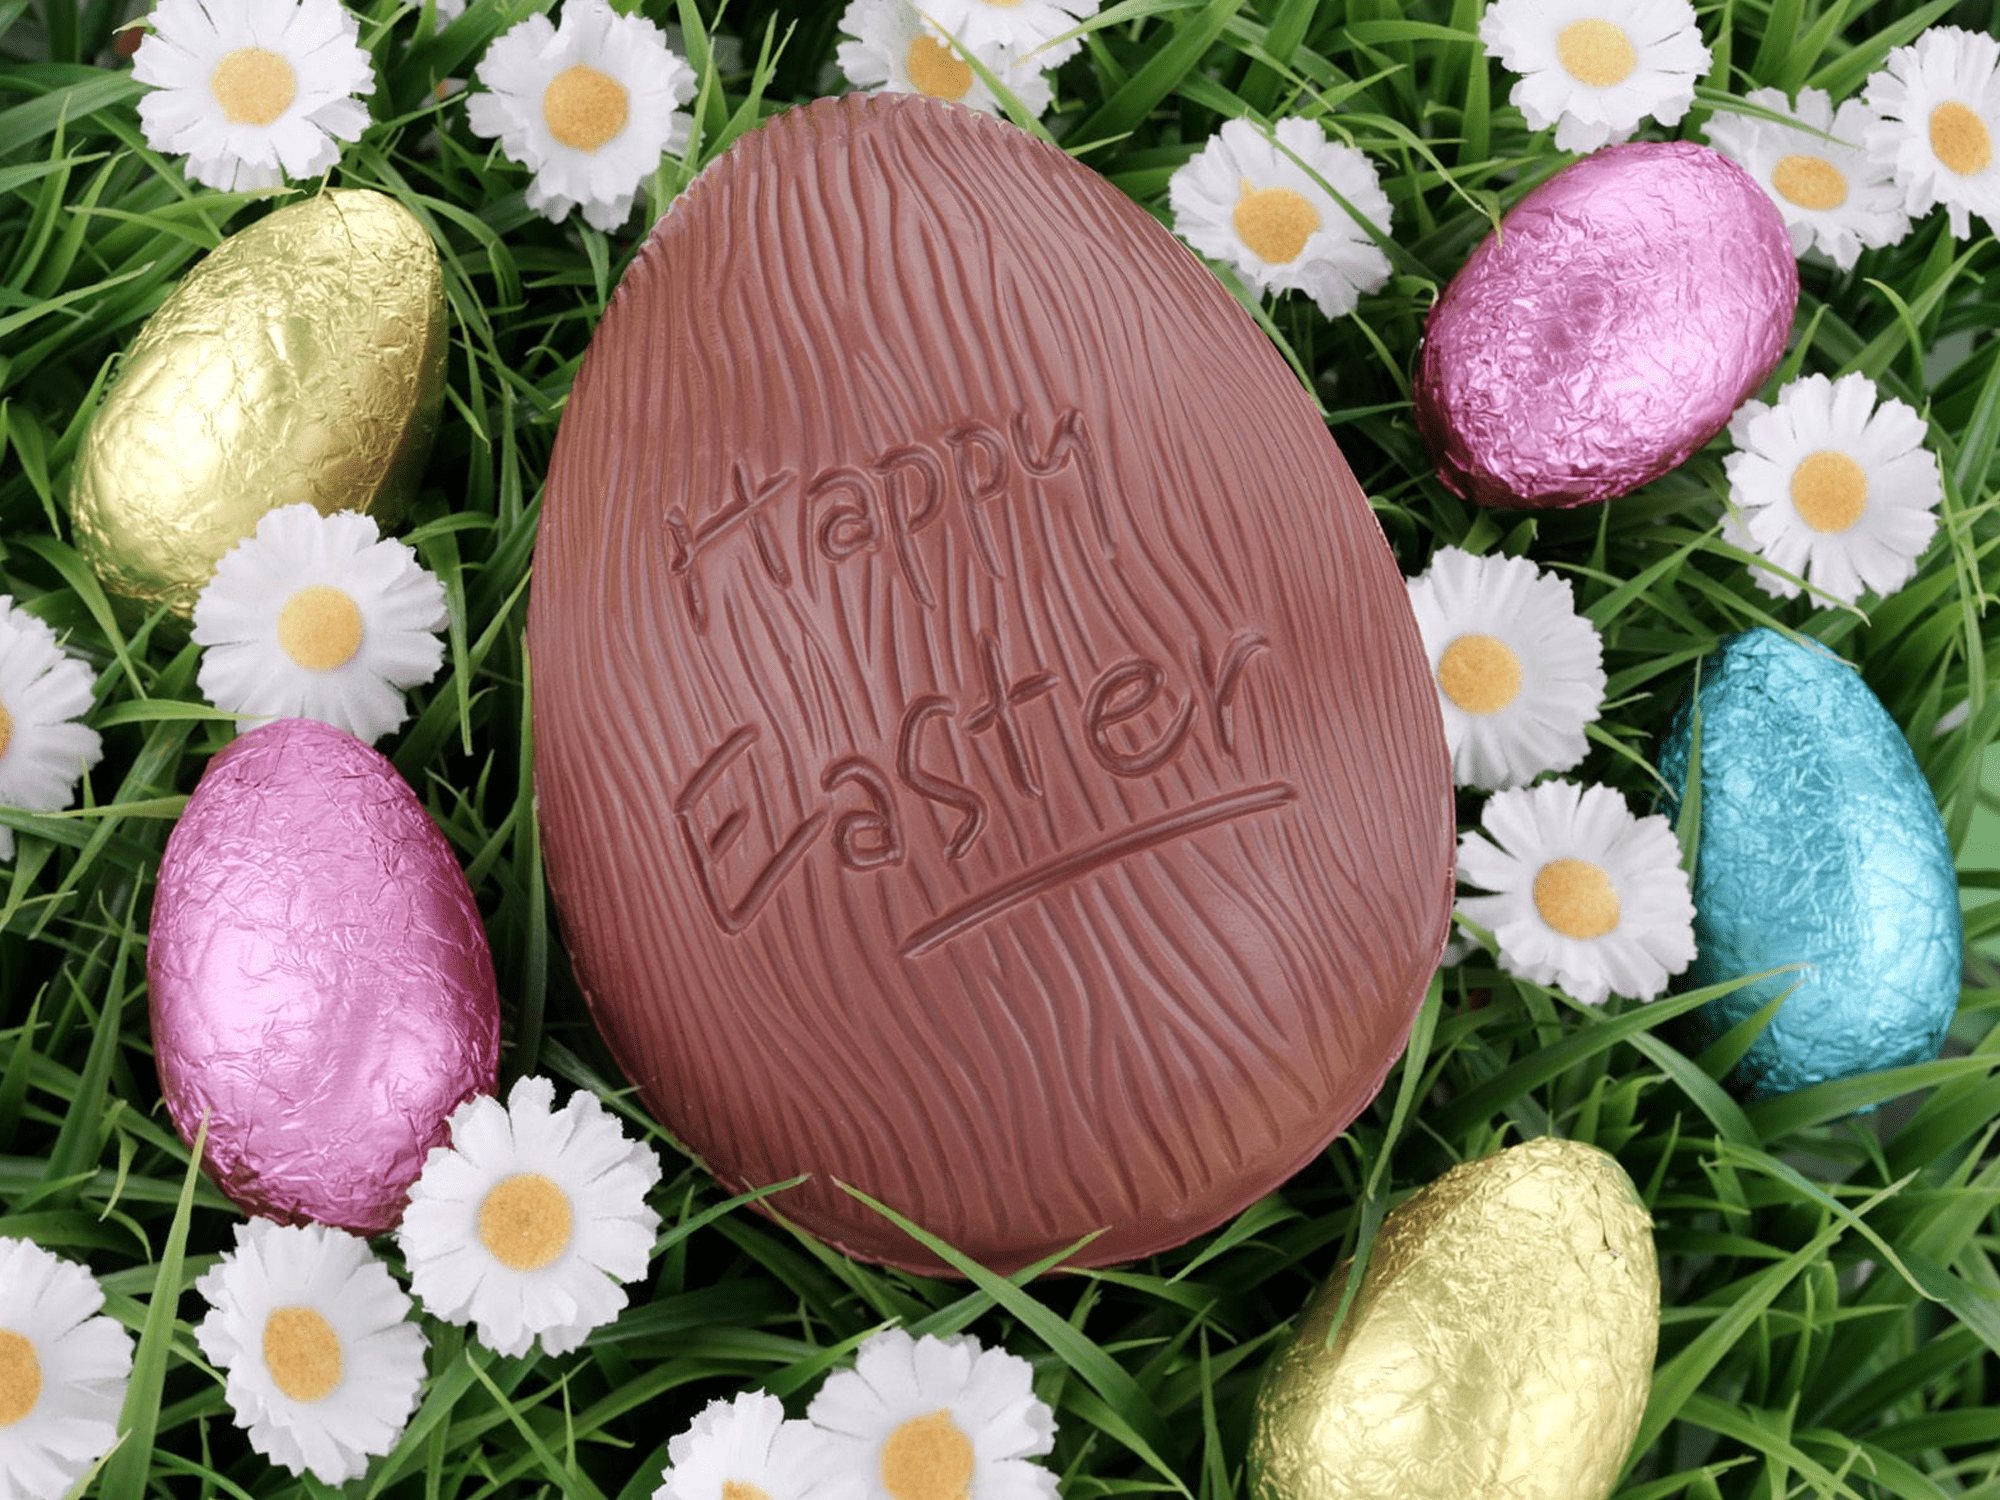 Zdarma velikonoční tapeta s čokoládovým velikonočním vejcem obklopeným sedmikráskami a barevně zabalenými vejci